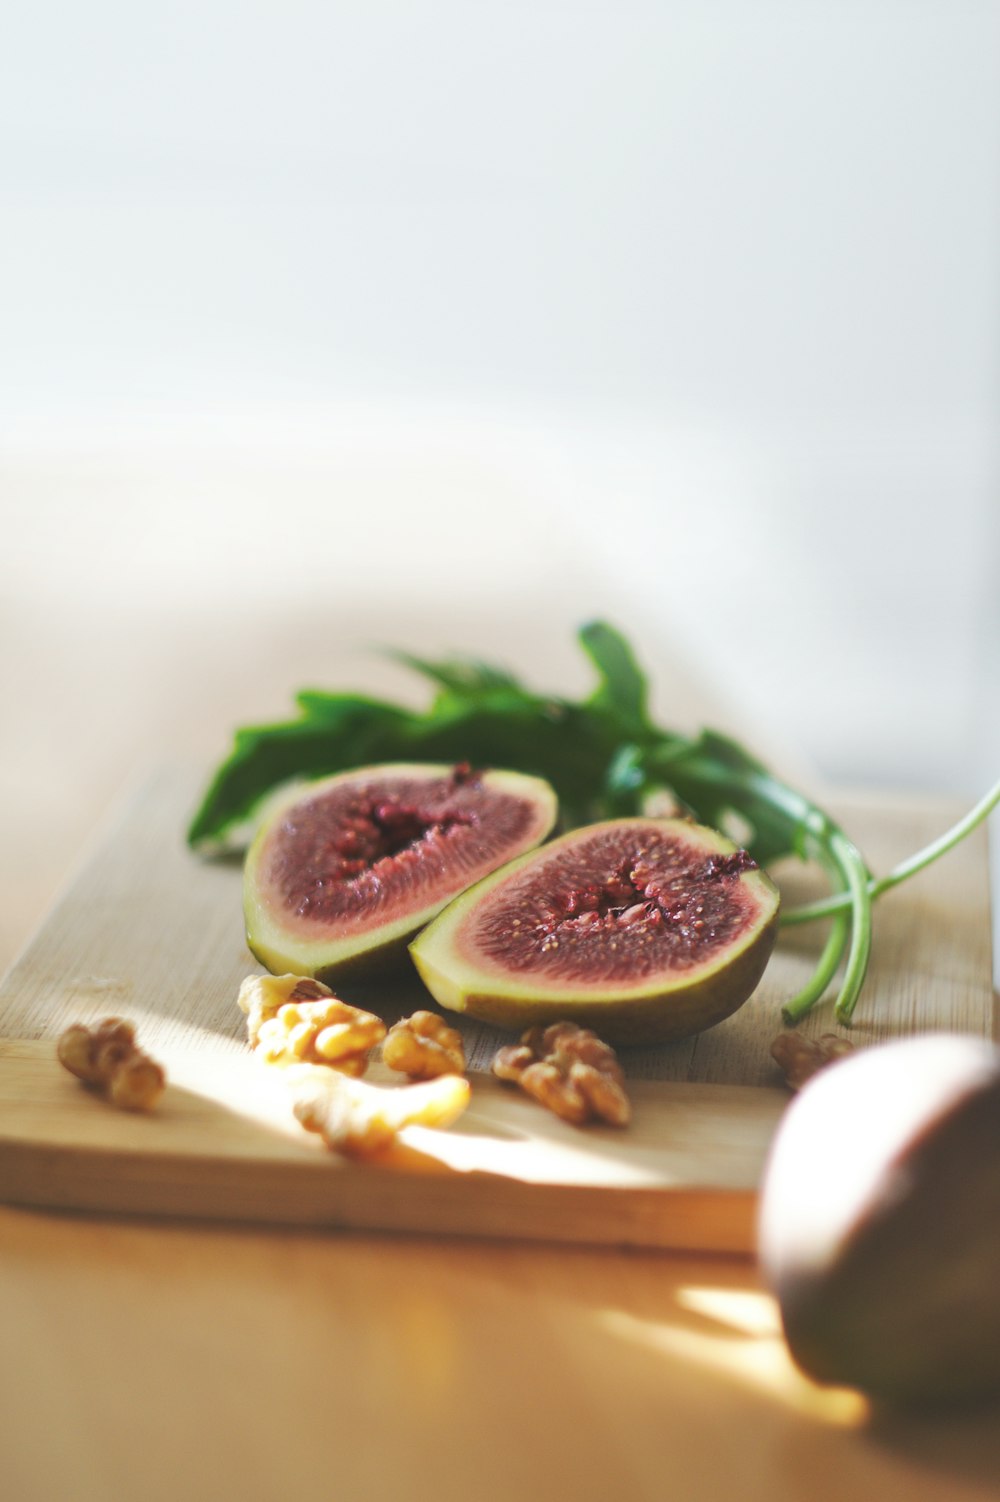 Cutting board with a fig fruit cut in half, a sprig of arugula, and walnuts